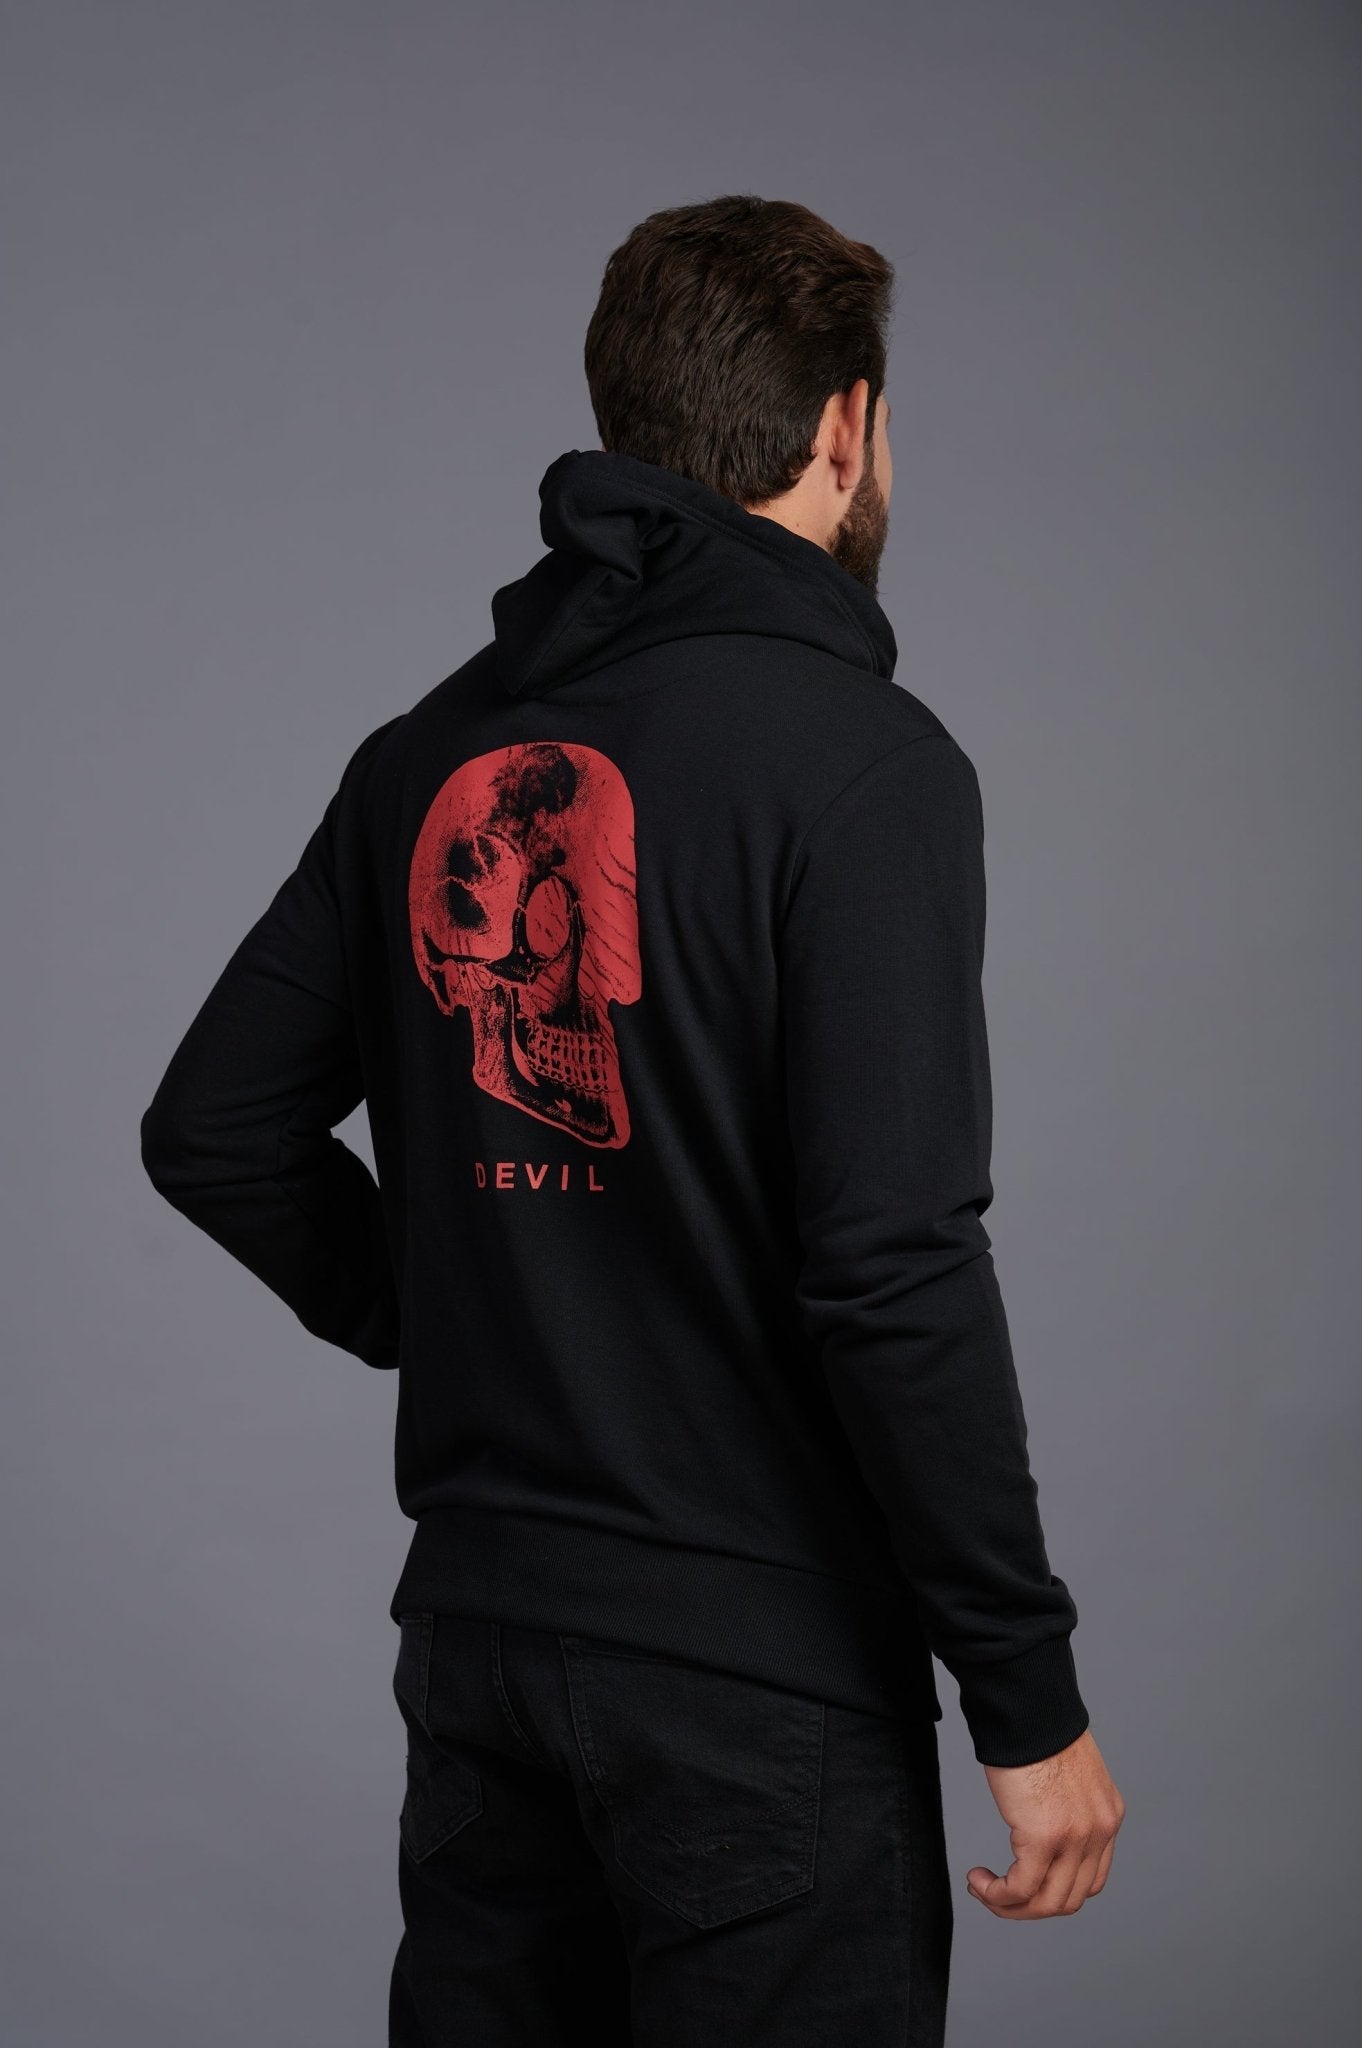 Red Skull Printed Black Zipper Hoodie for Men - Go Devil